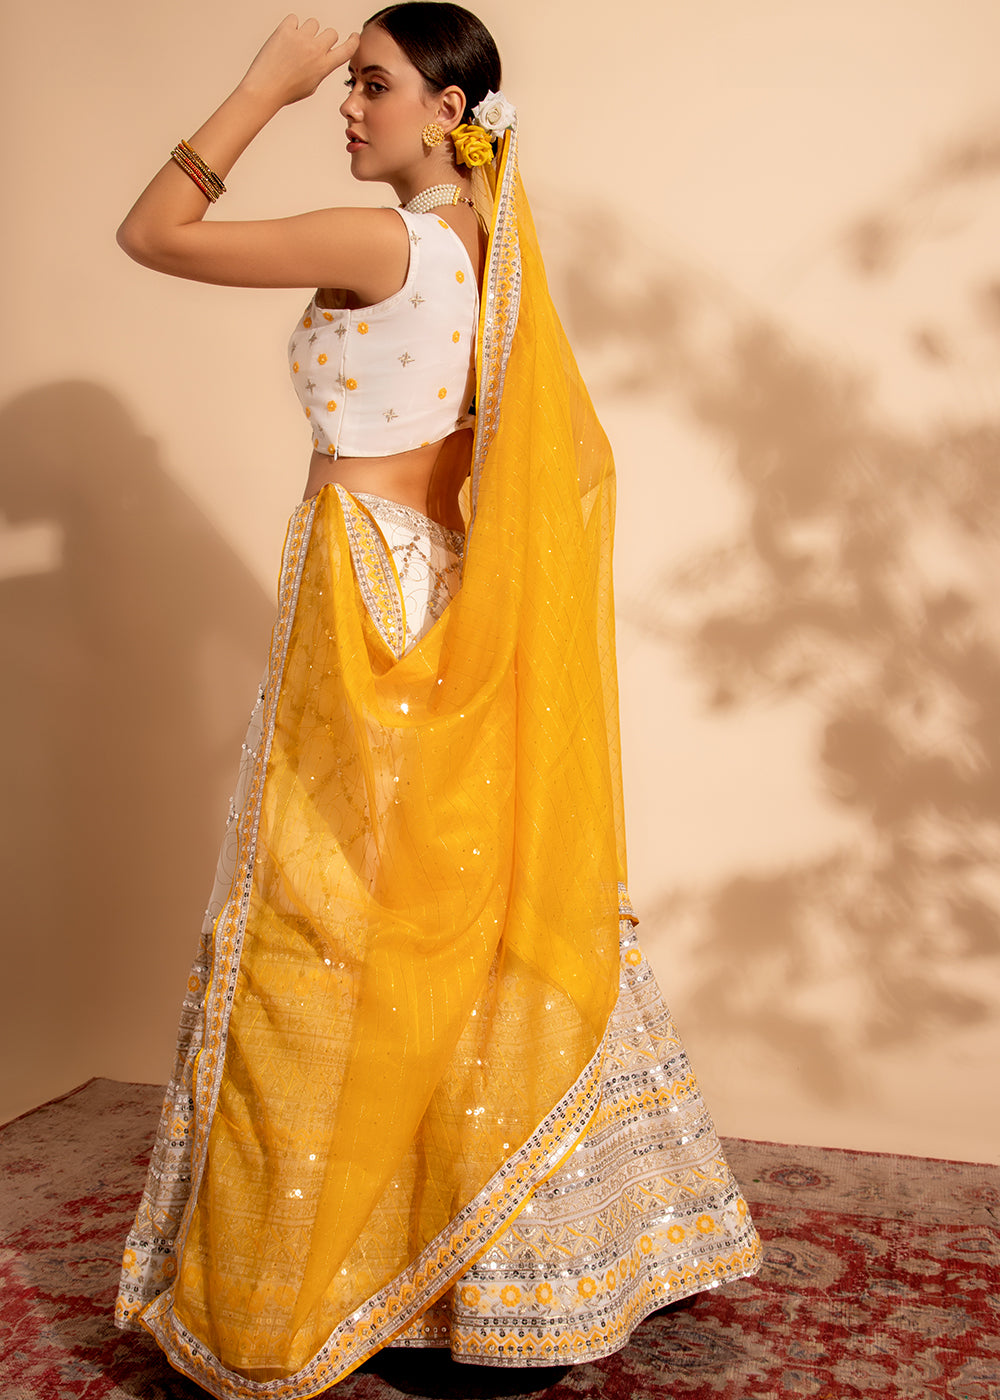 Buy Now Yellow & White Bridesmaid Style Wedding Lehenga Choli Online in USA, UK, Canada & Worldwide at Empress Clothing.